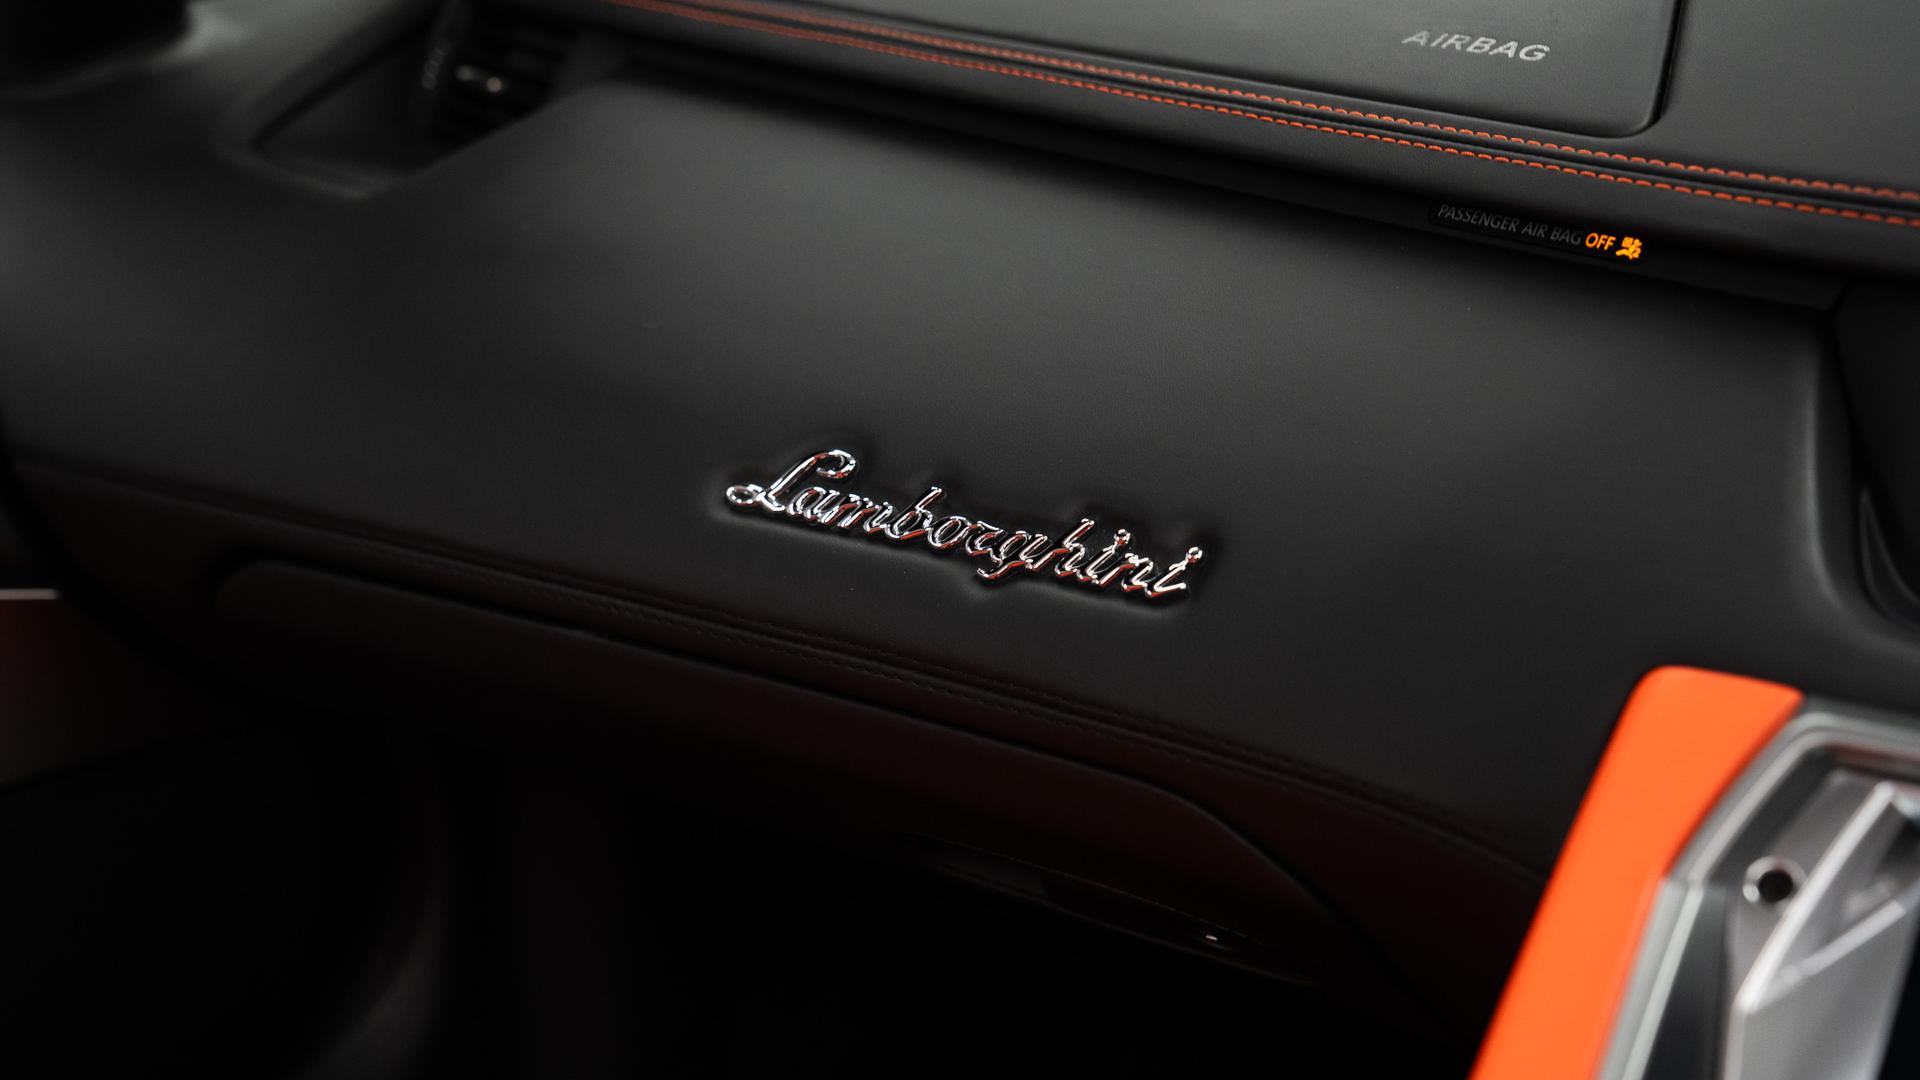 Lamborghini Aventador Photo be799cca-d4d9-4bc6-bd9a-4959d3497f49.jpg